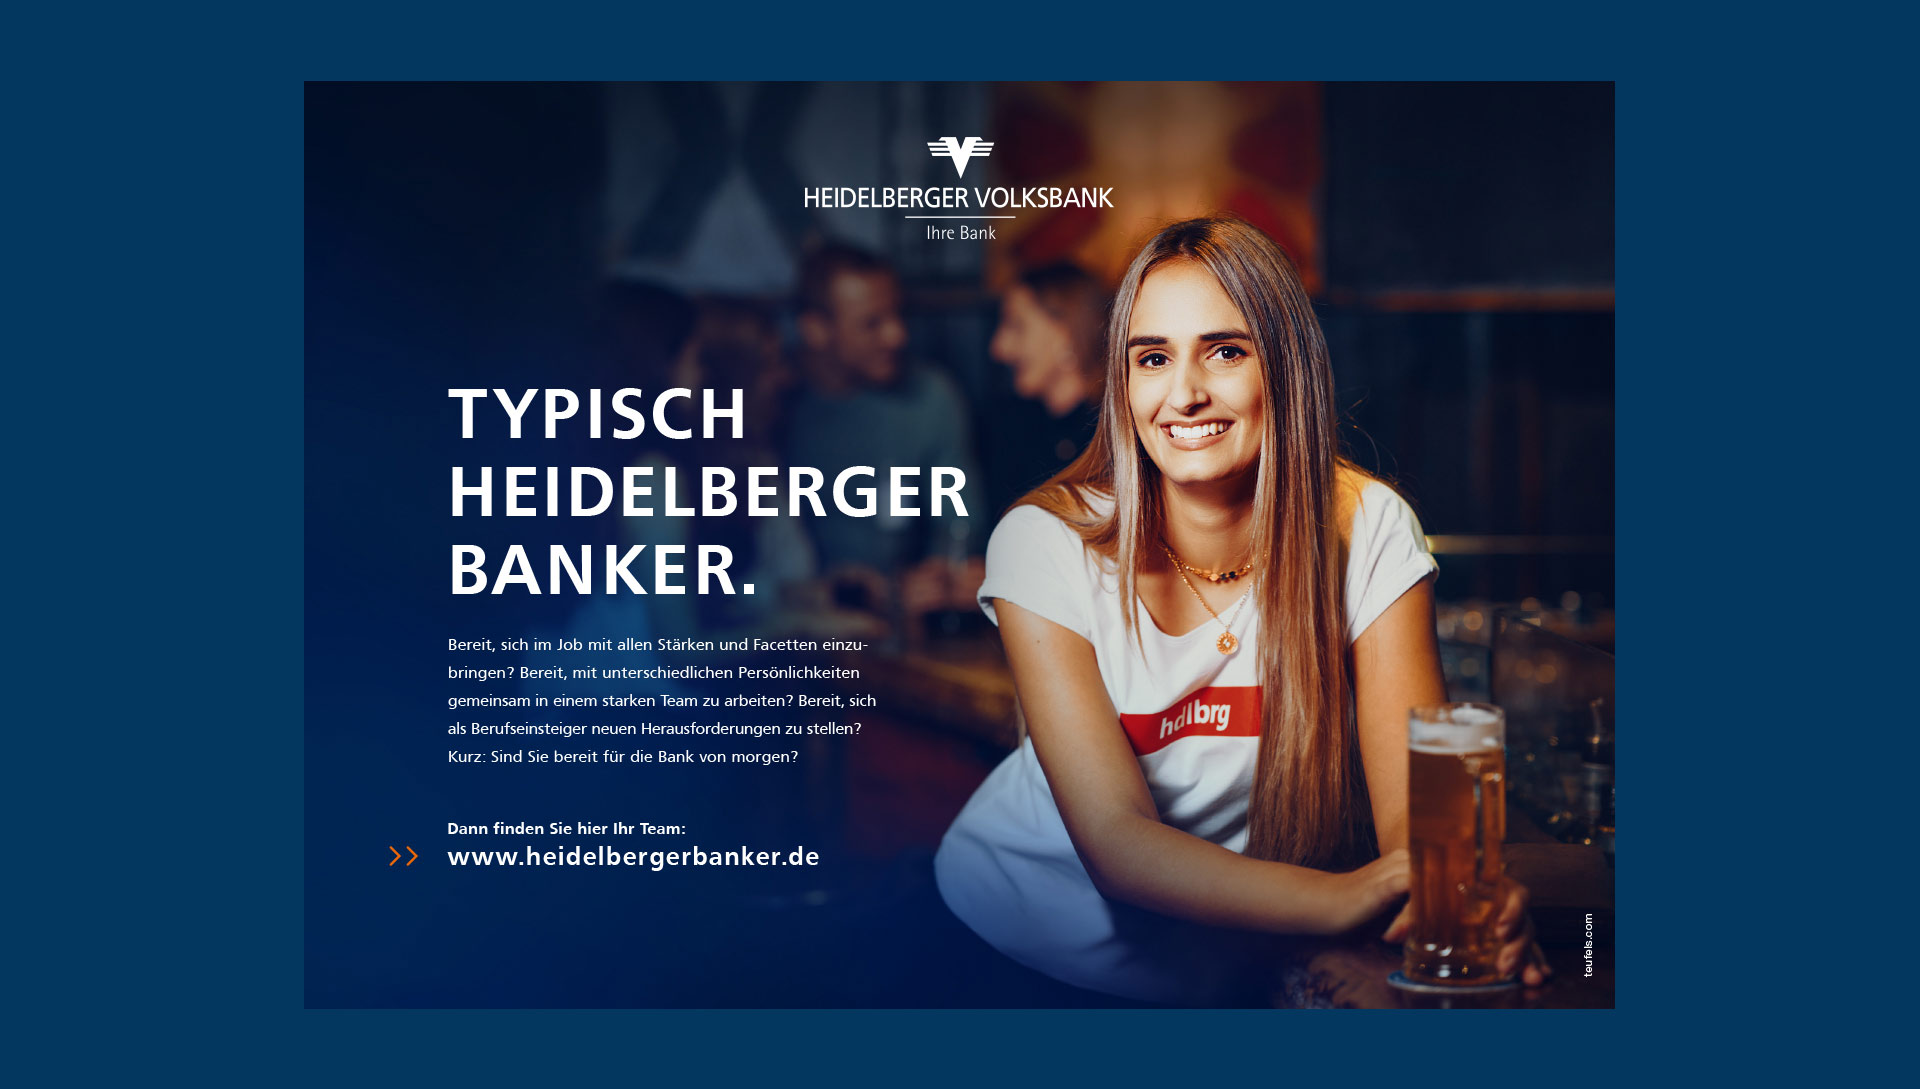 Anzeige für die Heidelberger Volksbank